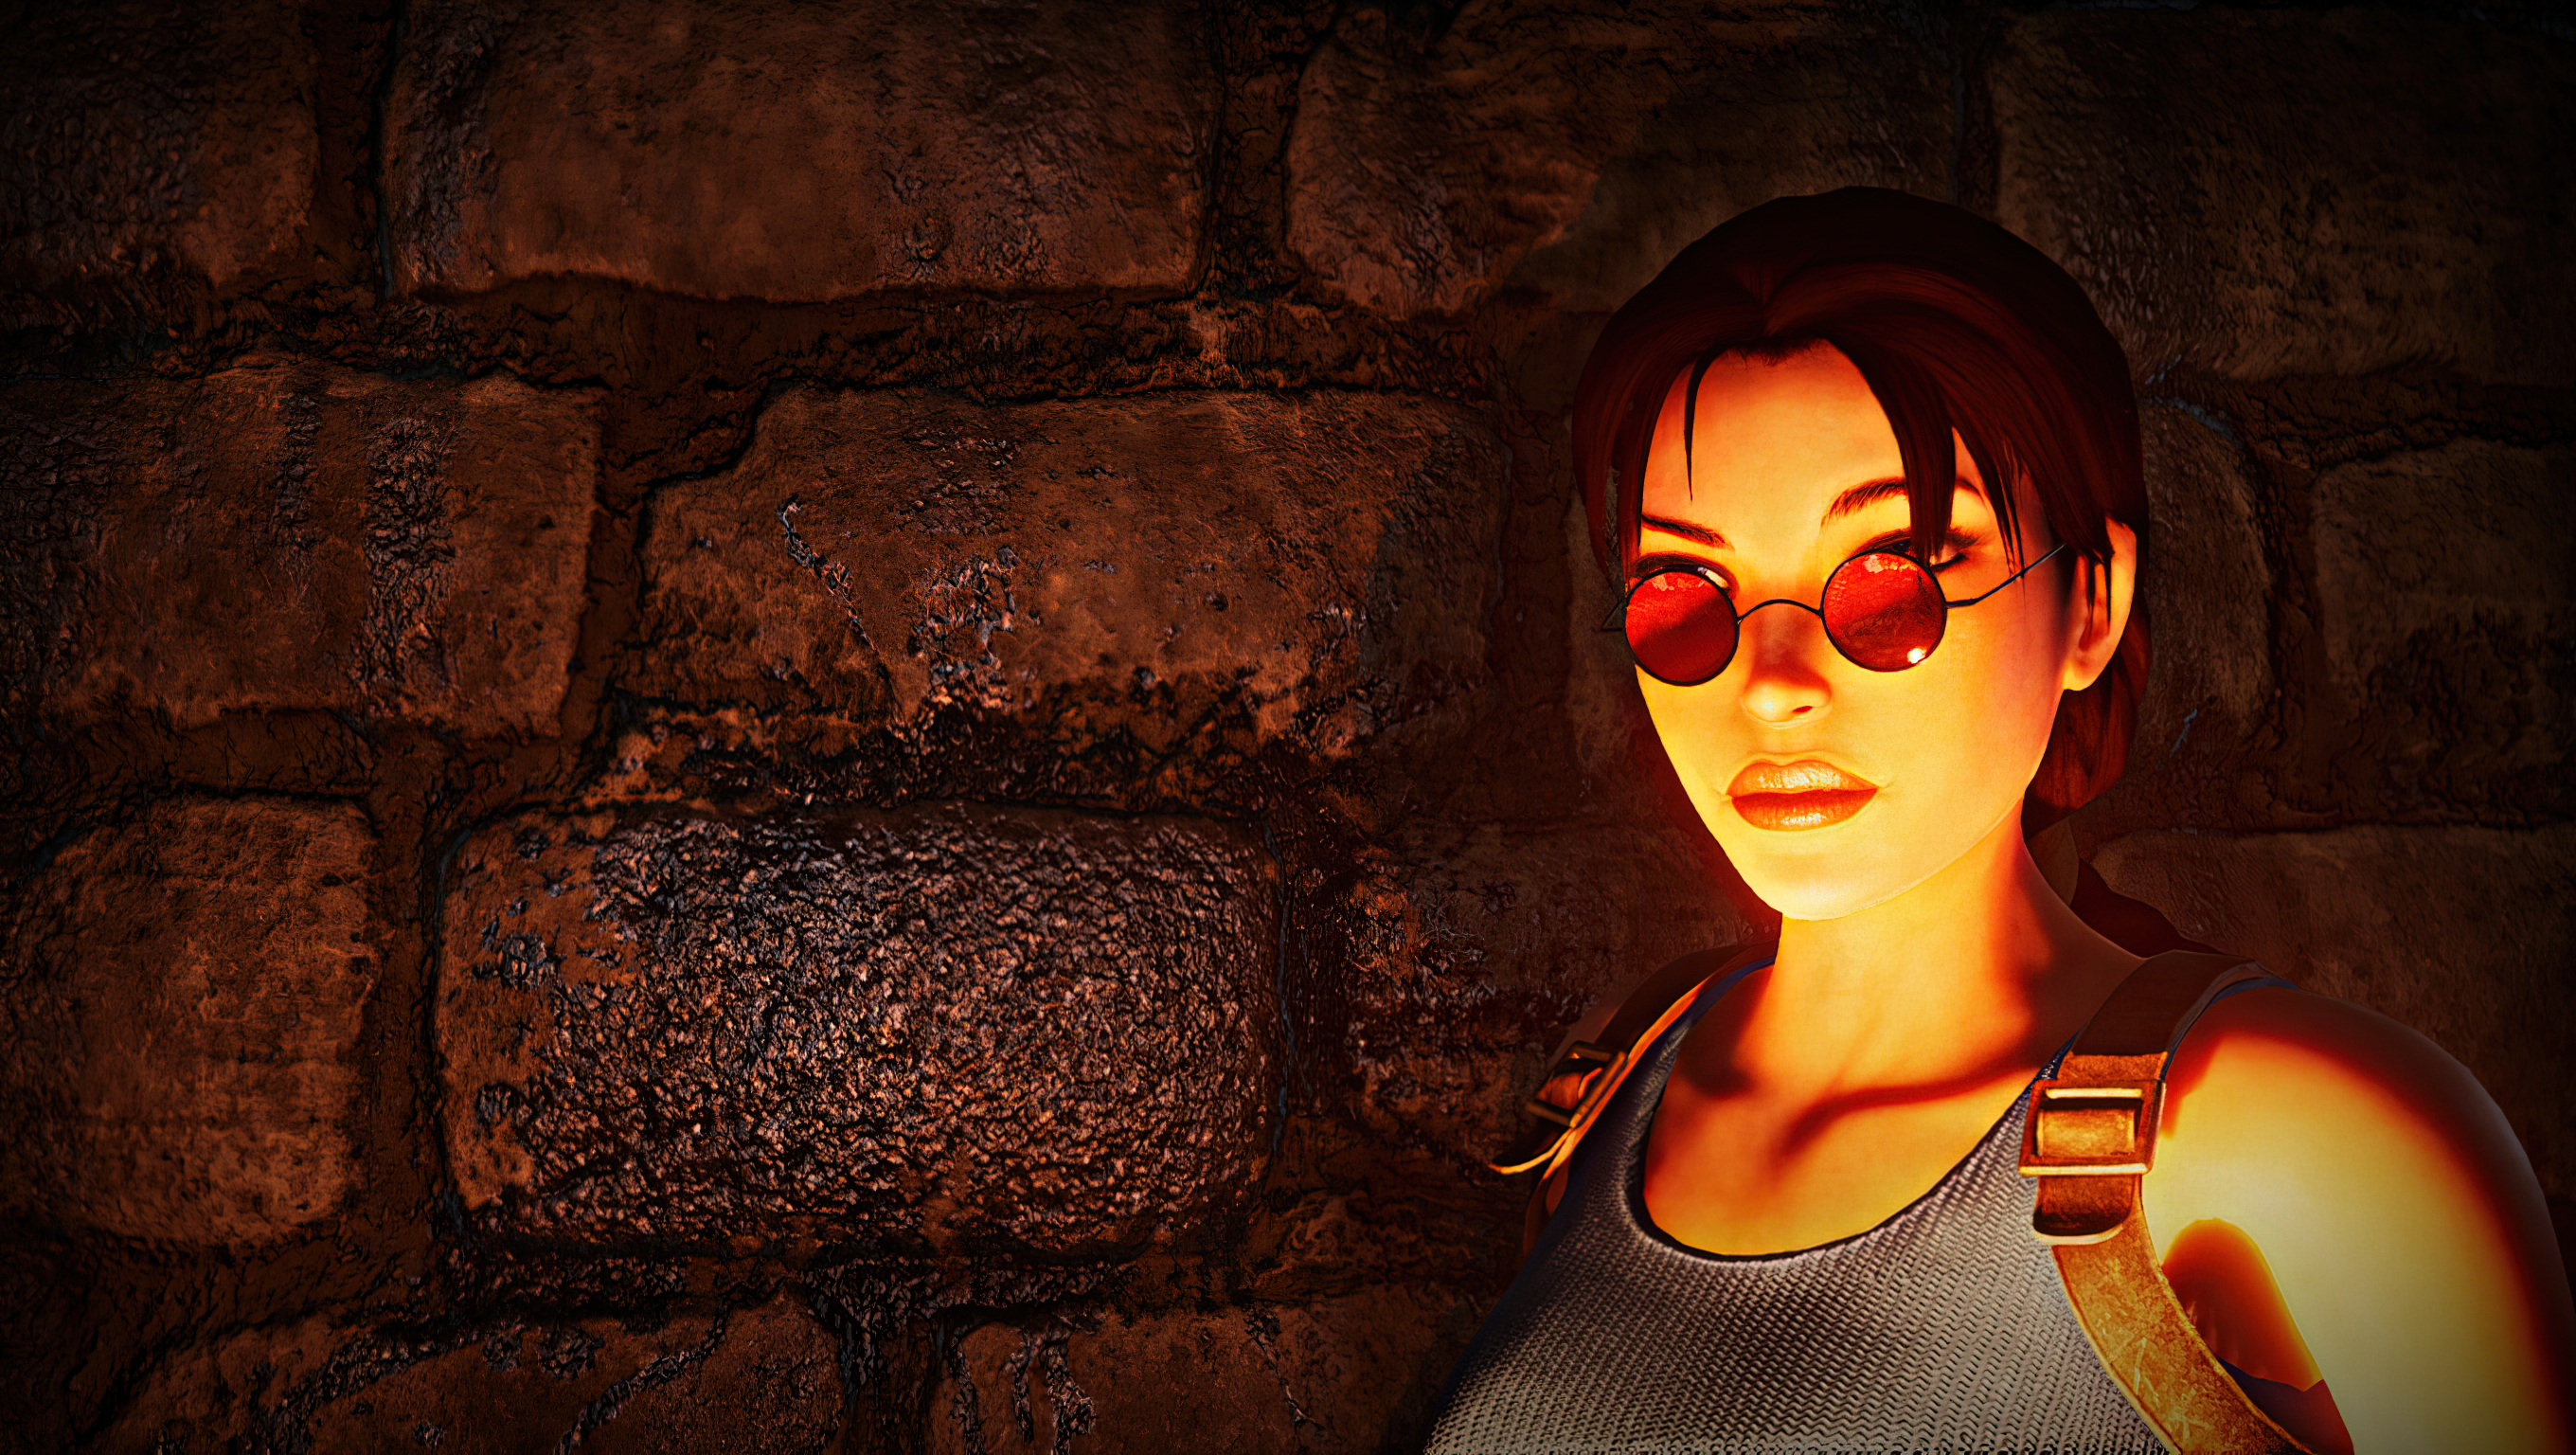 Lara Croft Game Characters Tomb Raider Tomb Raider Ii Starring Lara Croft Red Video Game Girls Women 2720x1536